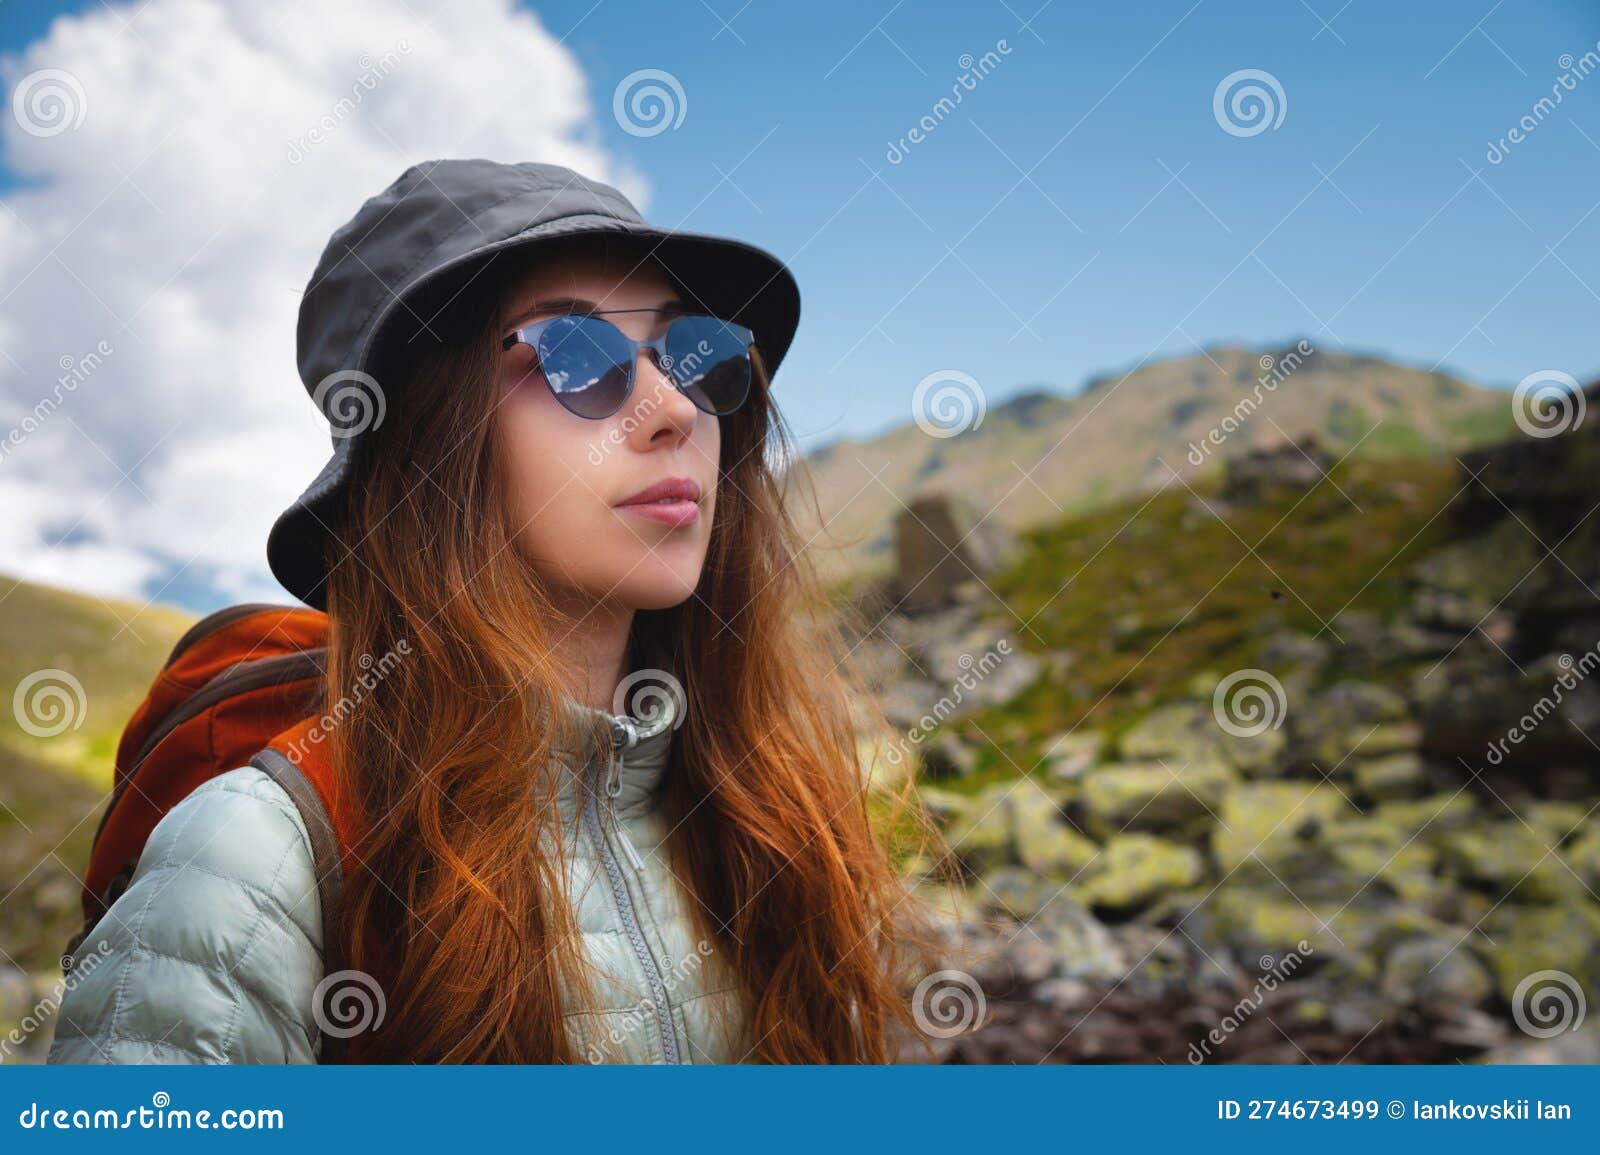 Portrait D'une Jeune Femme Touriste Avec Un Grand Sac à Dos De Voyage Au  Lever Du Soleil En Mer. Concept De Voyage Et De Tourisme